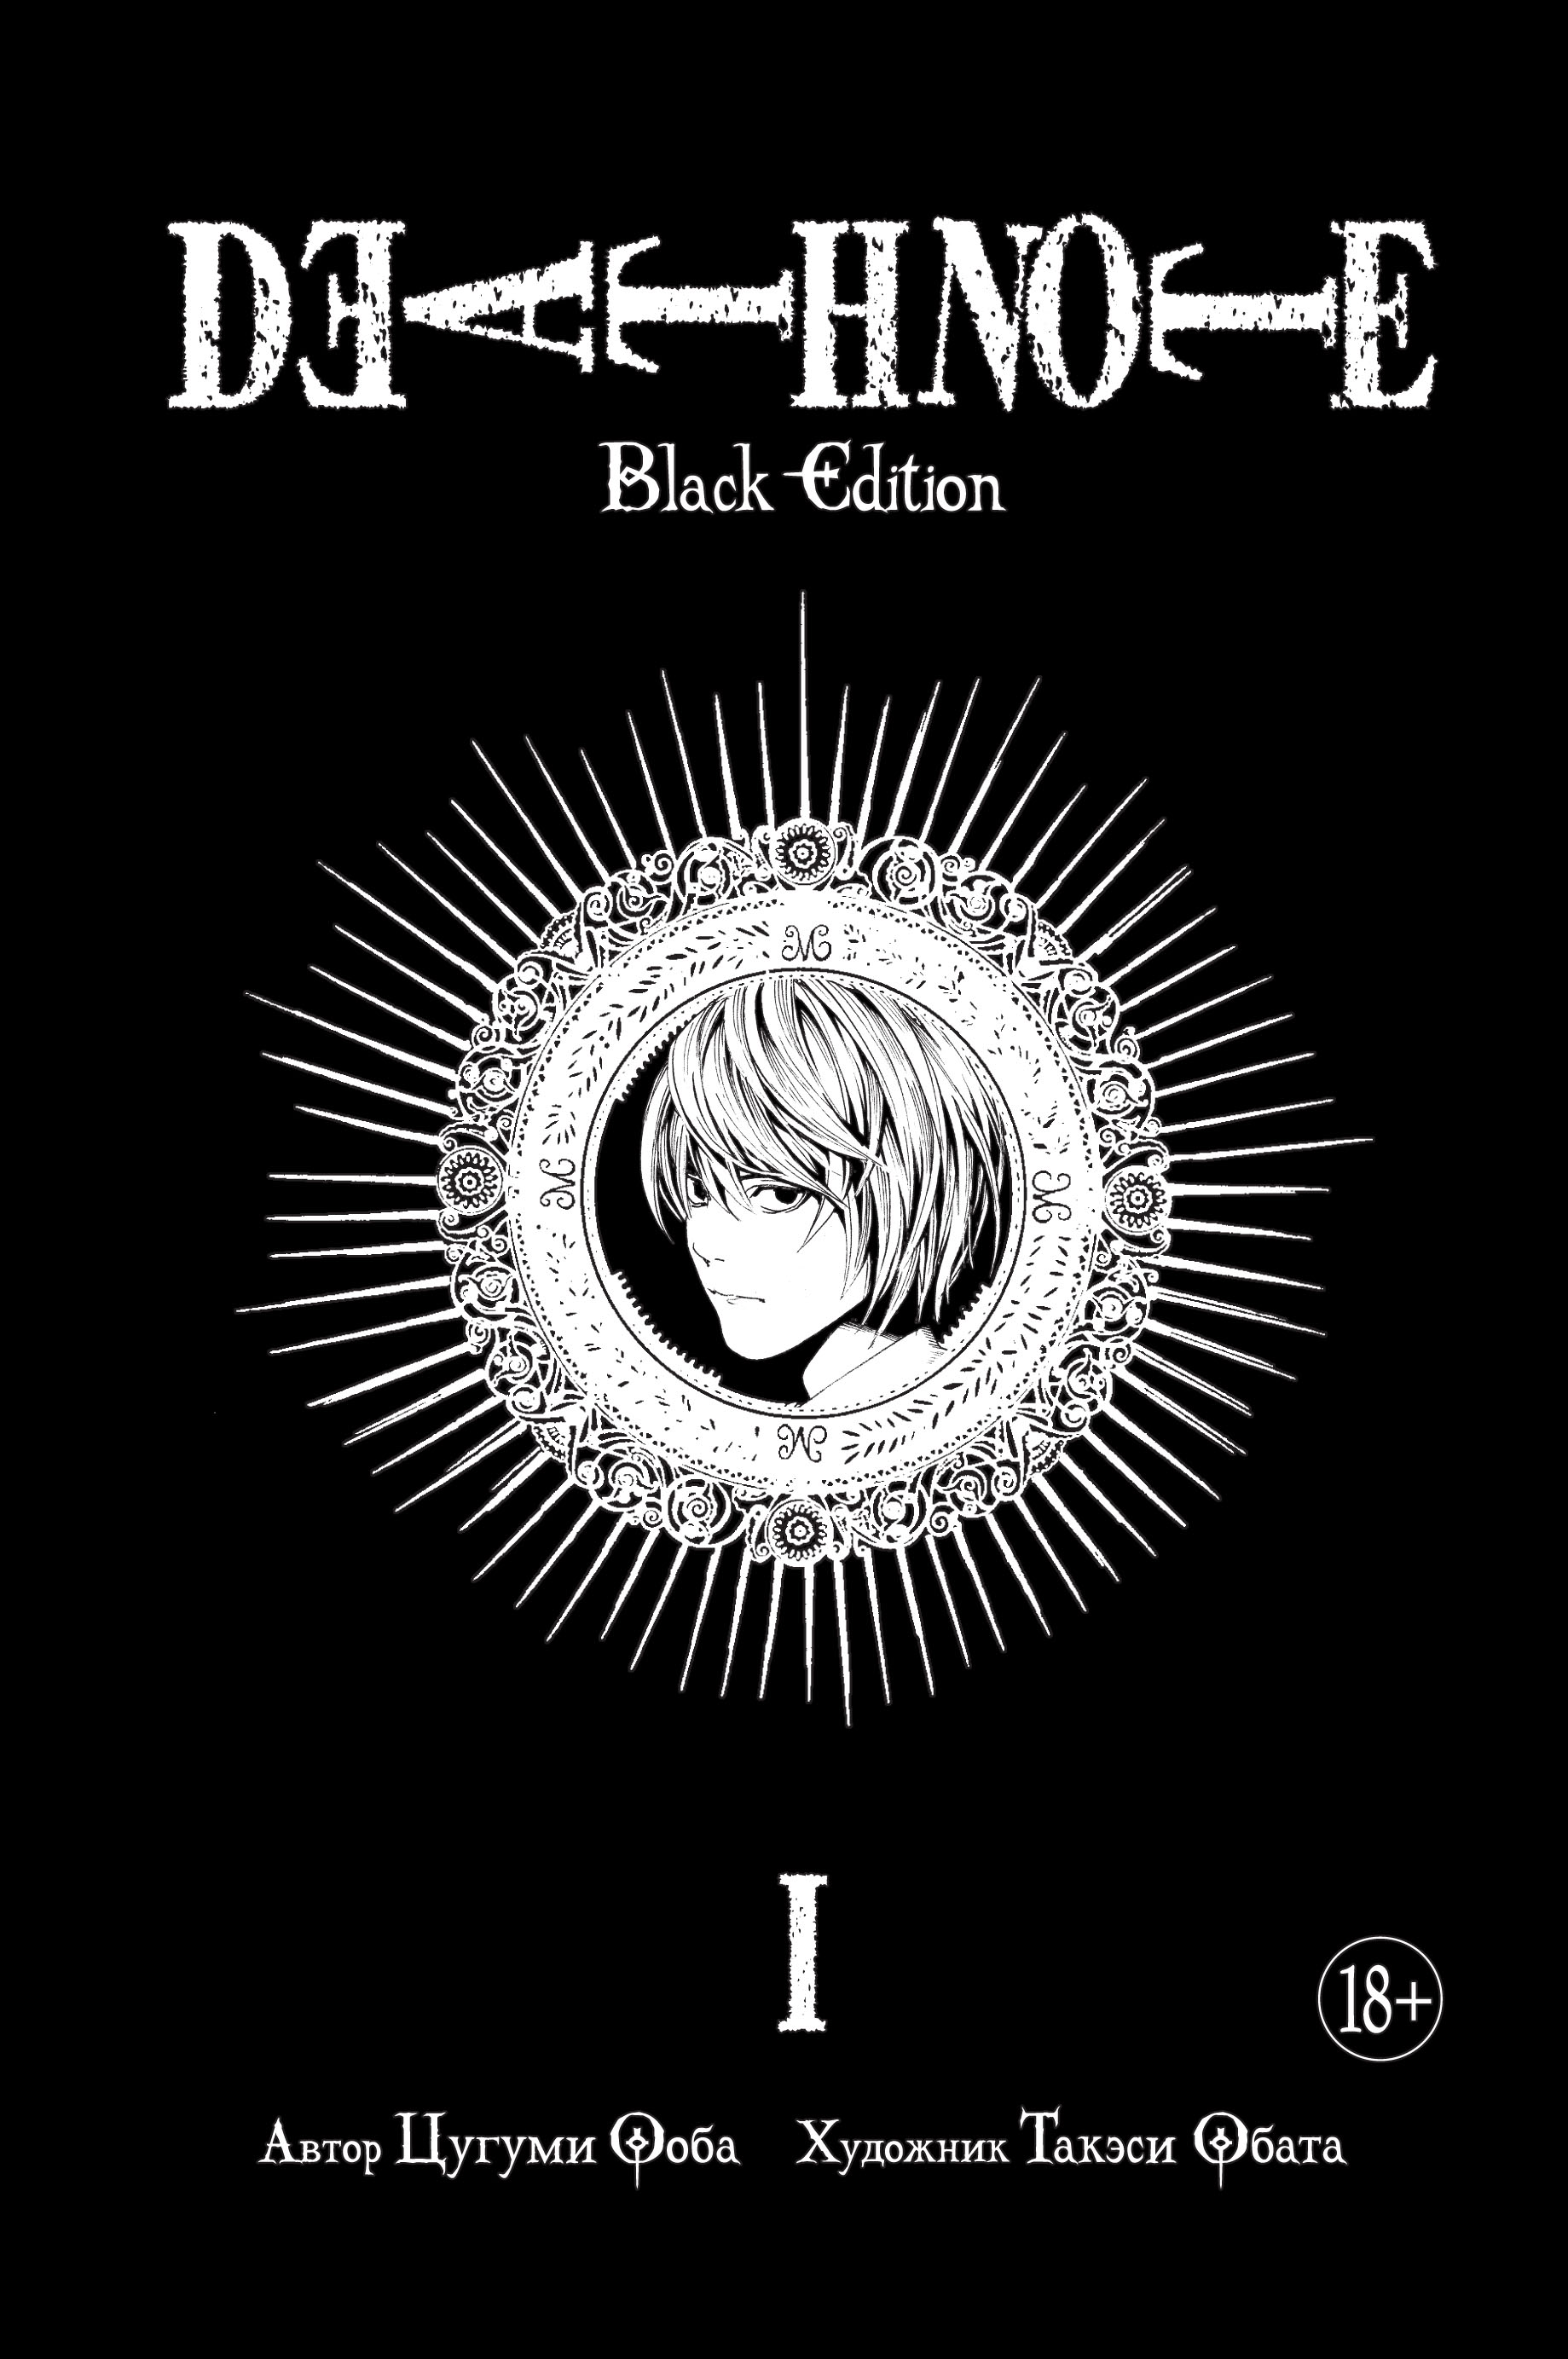 Ооба Цугуми Death Note. Black Edition. Книга 1 манга death note black edition книги 1–2 комплект книг